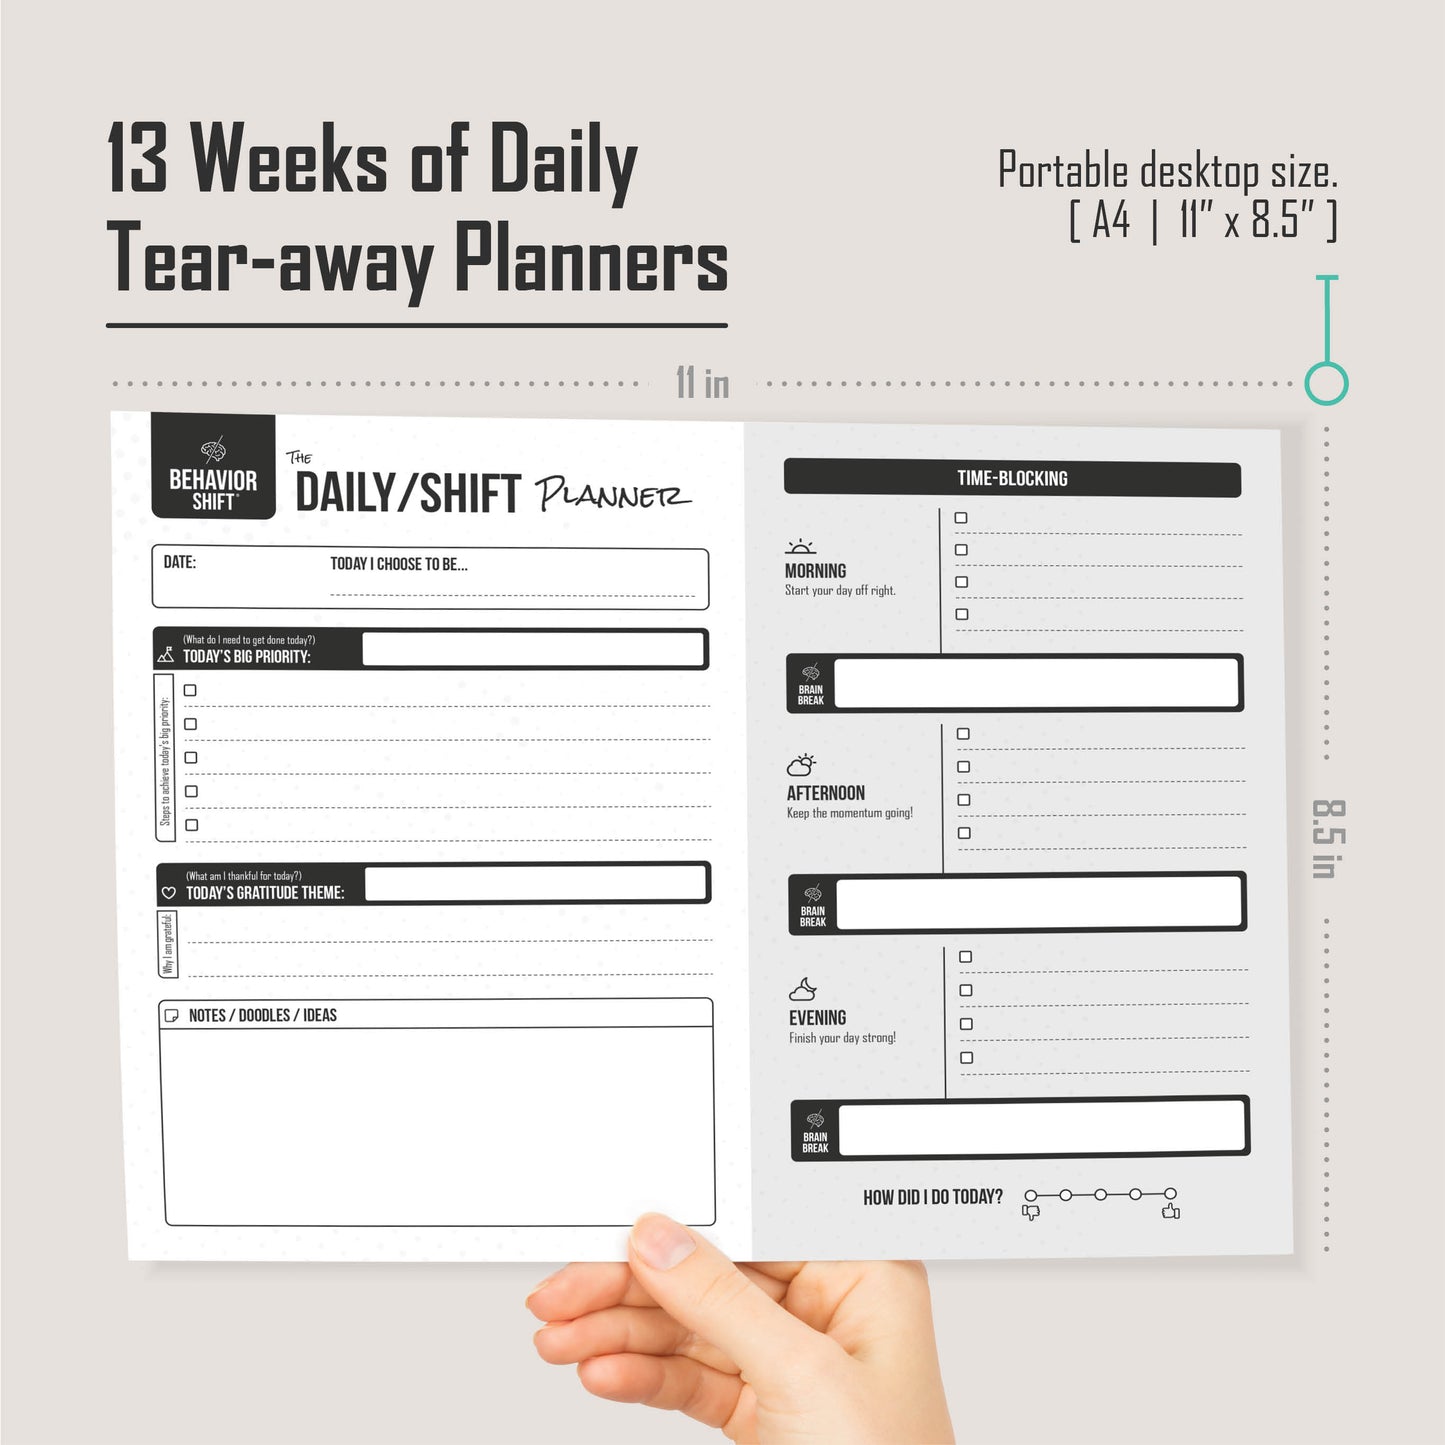 The Daily/Shift 13-Week Tear-off Desktop Planner